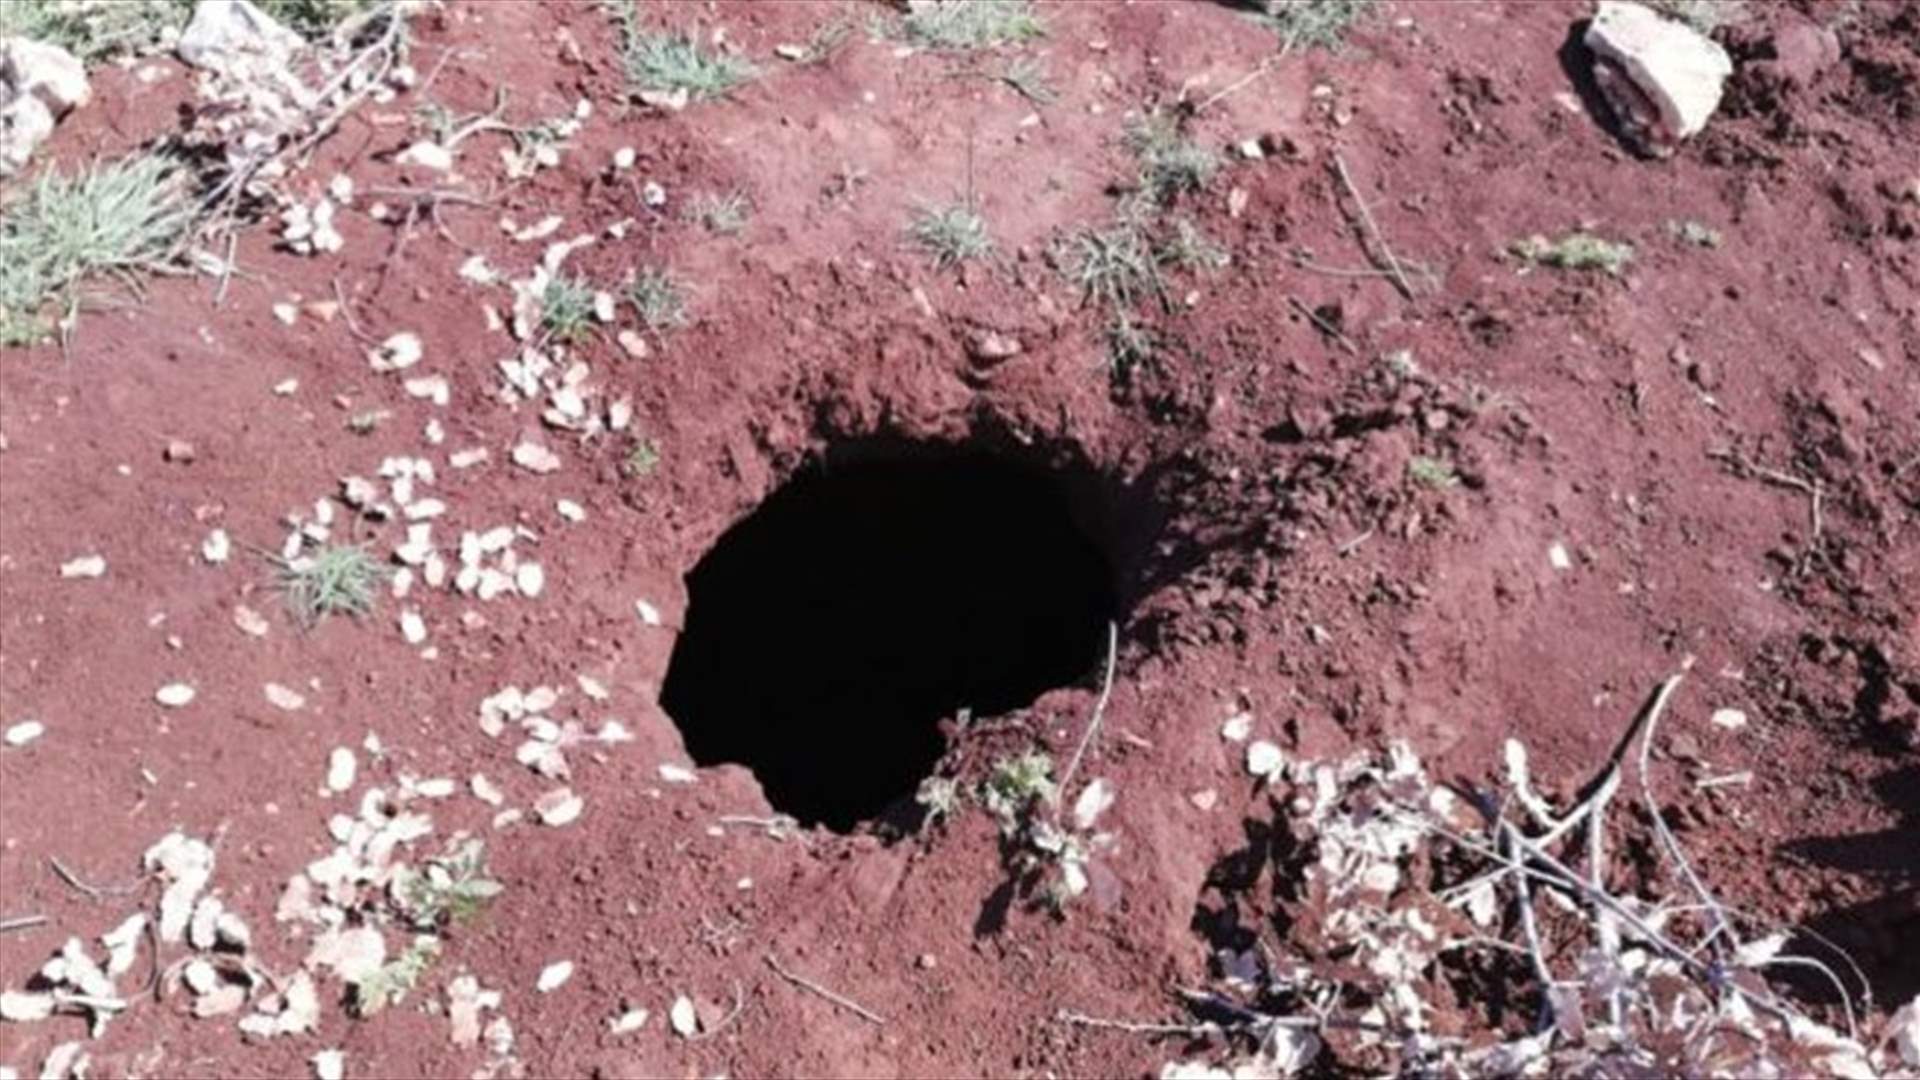 إنزلاق التربة يكشف عن فالق جيولوجي في بلدة الرام (صورة)